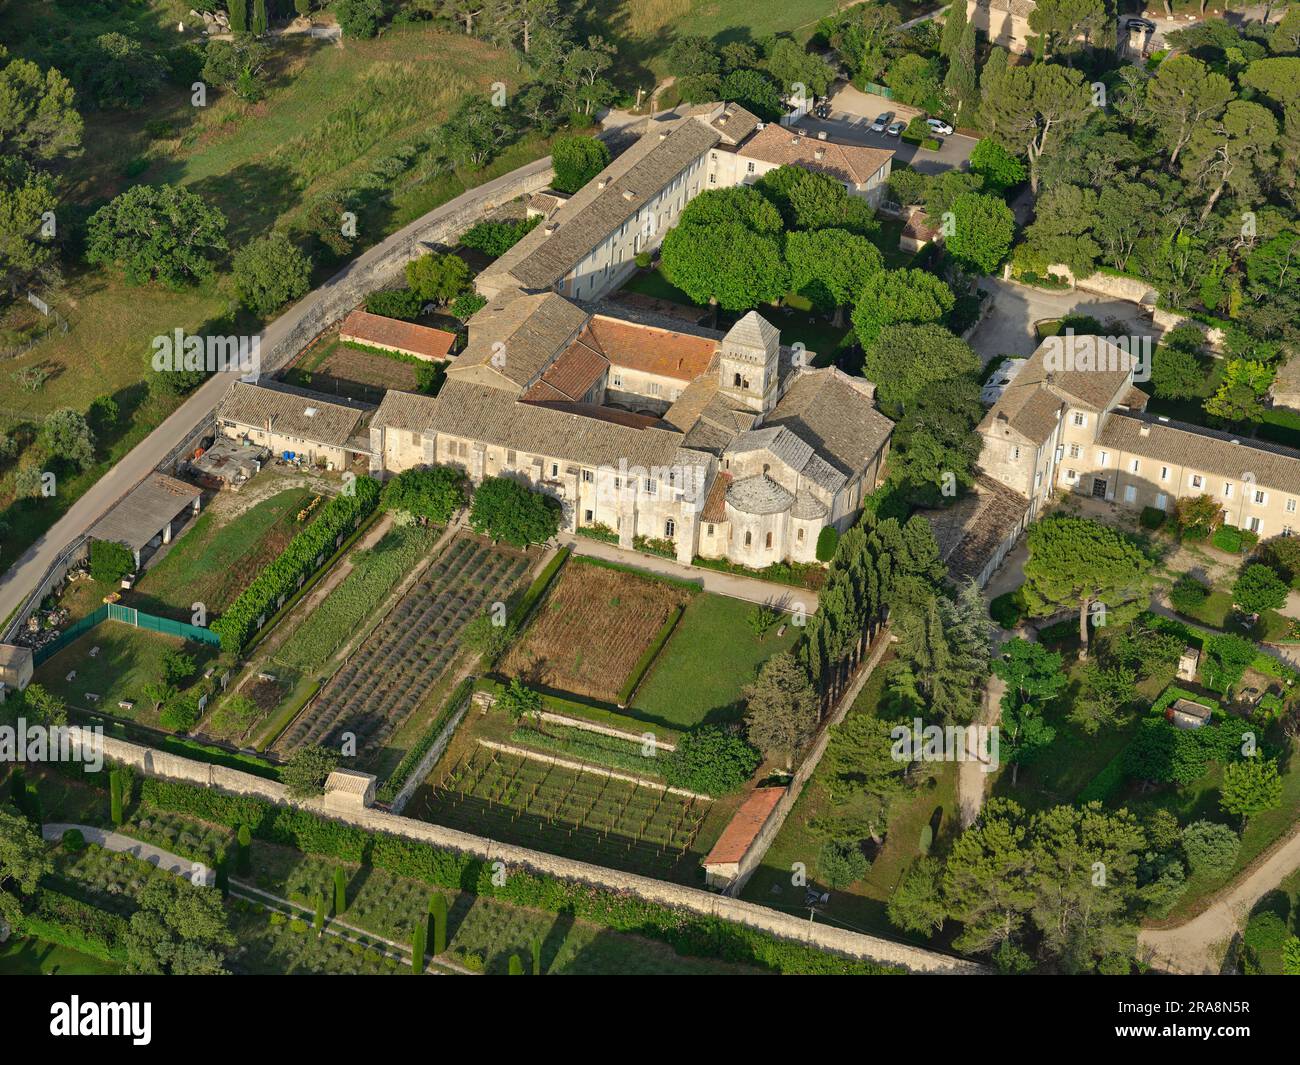 VUE AÉRIENNE. Monastère Saint-Paul de Mausole. Saint-Rémy-de-Provence, Bouches-du-Rhône, Provence-Alpes-Côte d'Azur, France. Banque D'Images